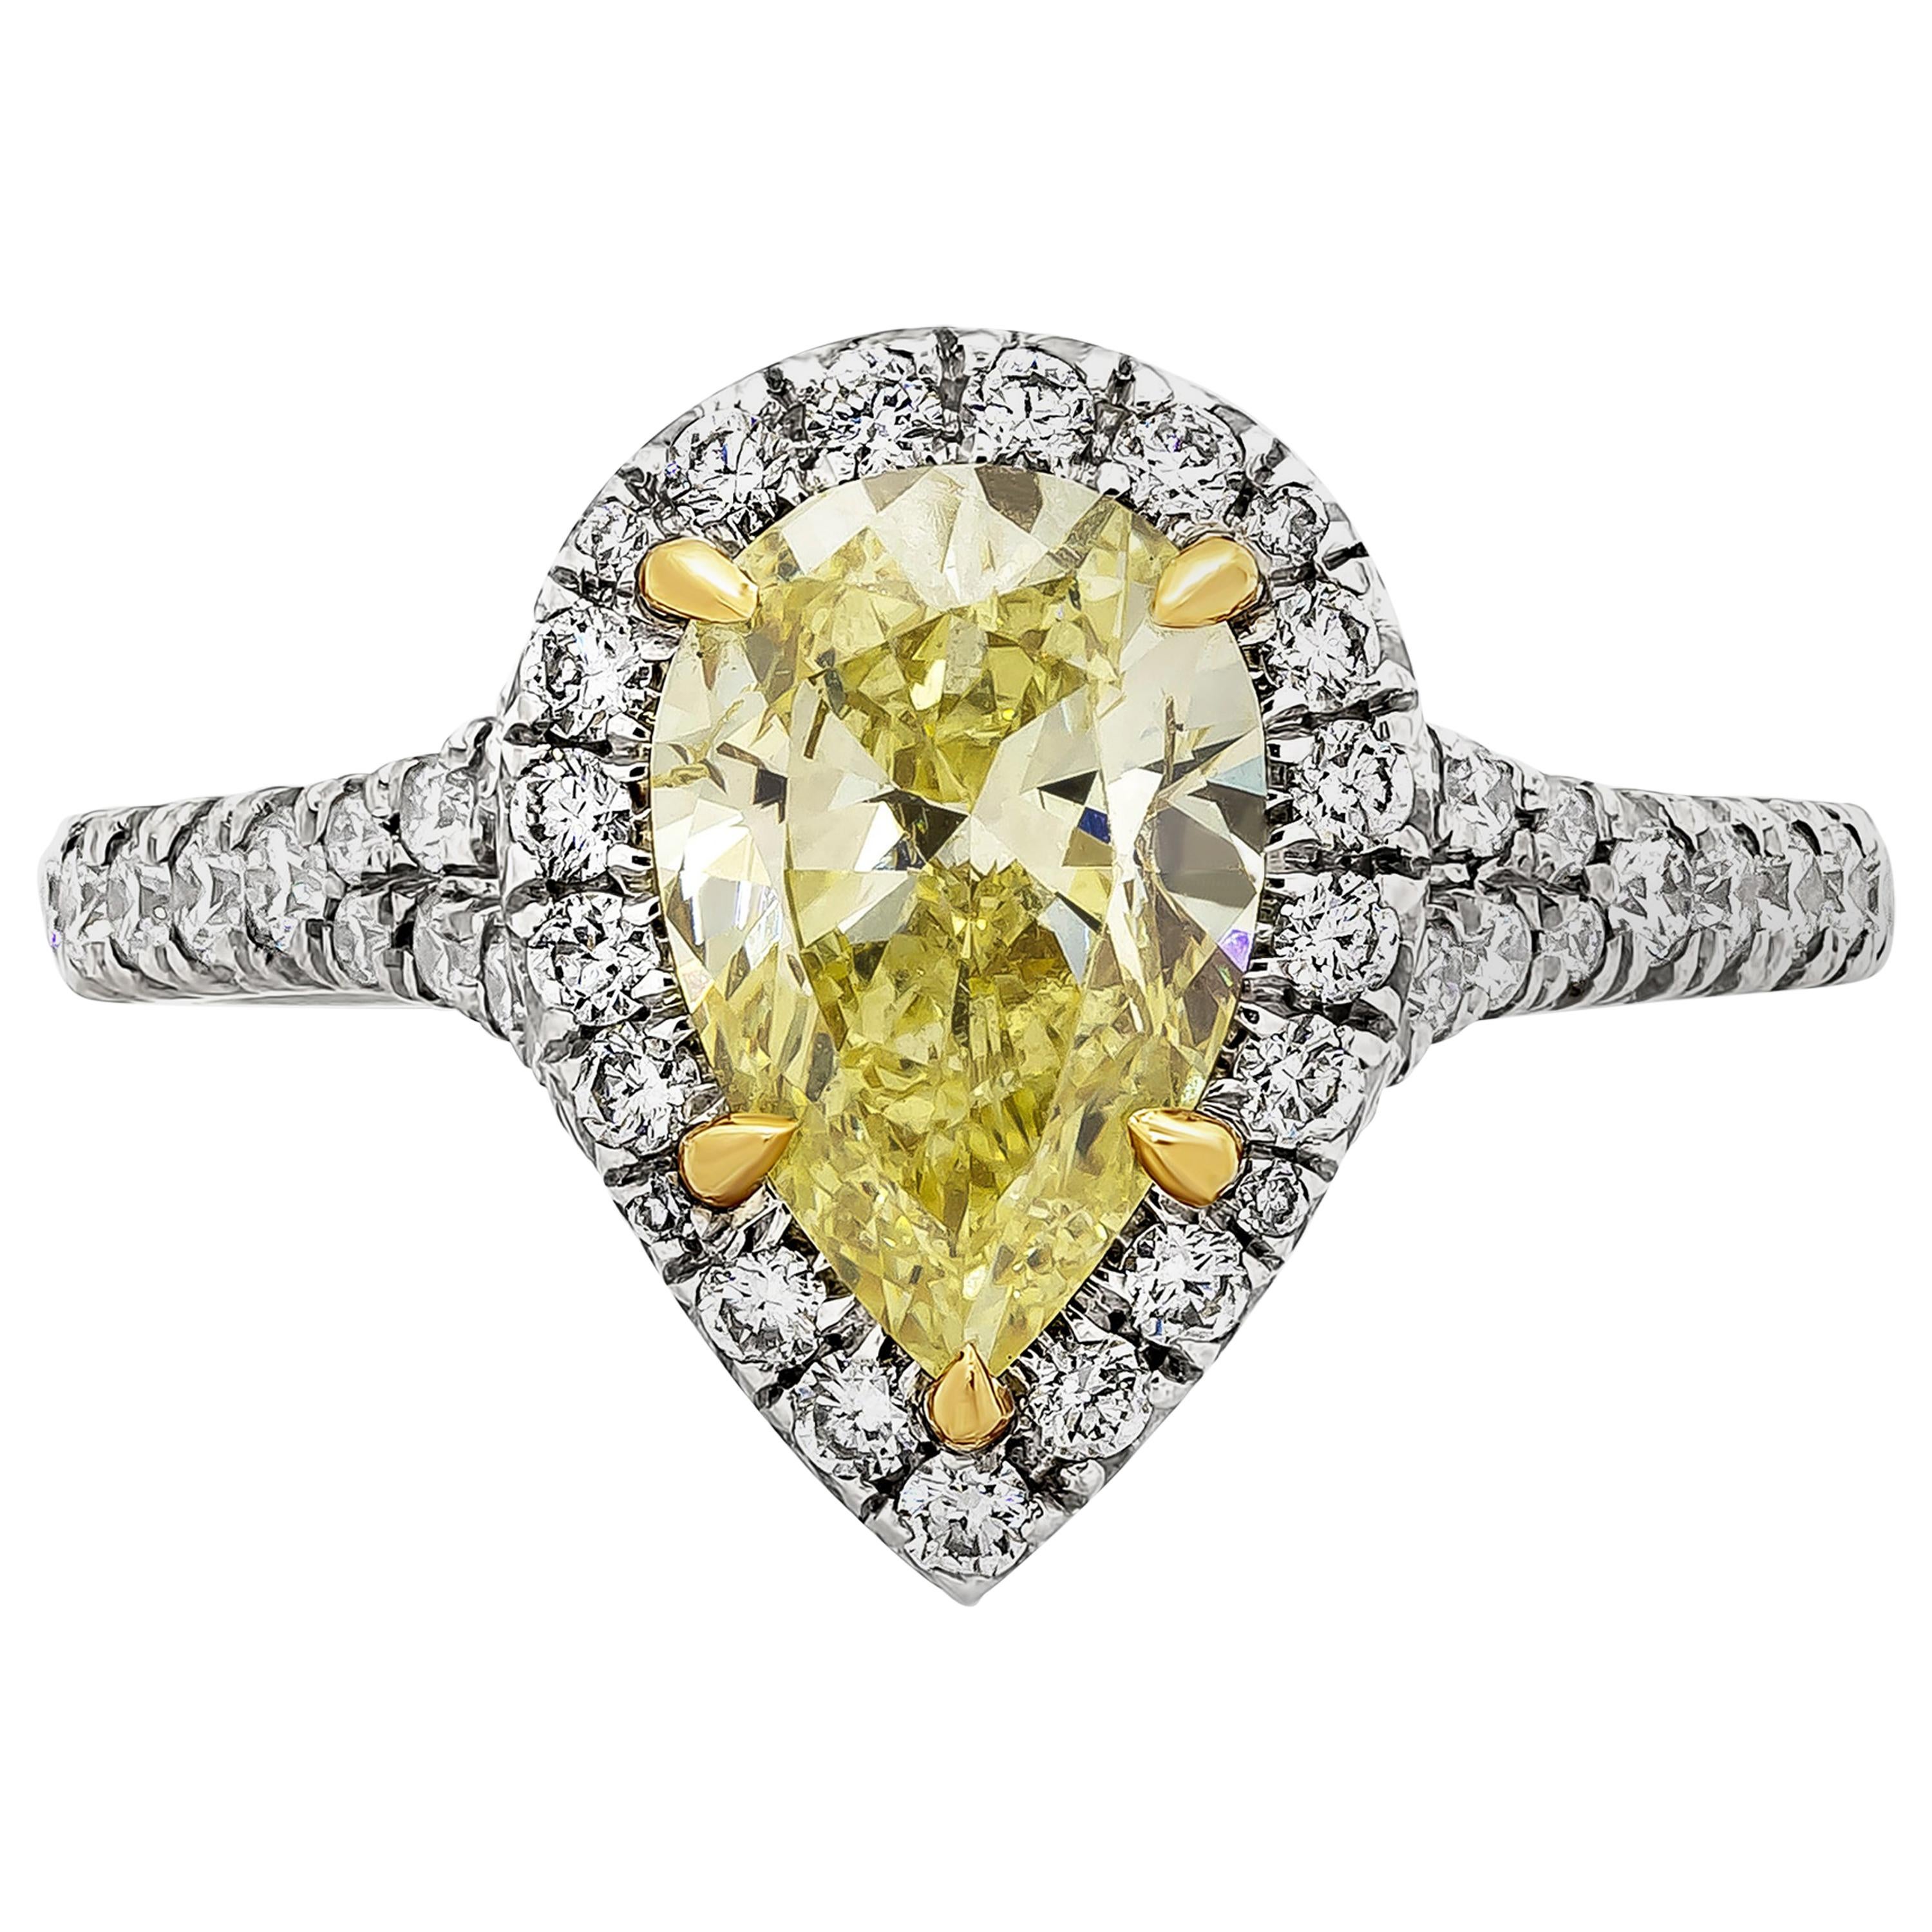 Bague de fiançailles halo de diamants jaunes intenses de 1,49 carat certifiés par le GIA